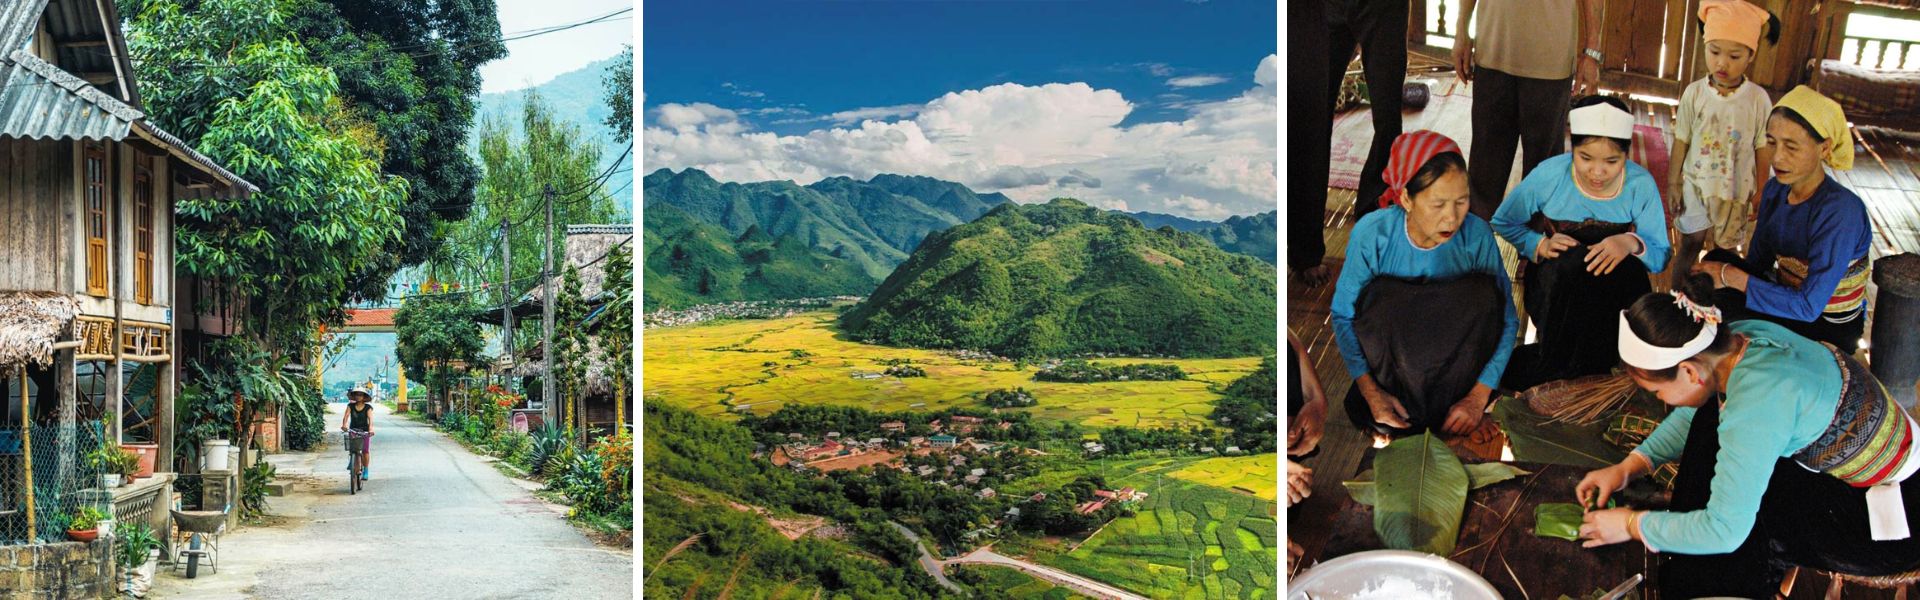 Mai Chau: Sehenswürdigkeiten und Aktivitäten | Vietnam Reisen